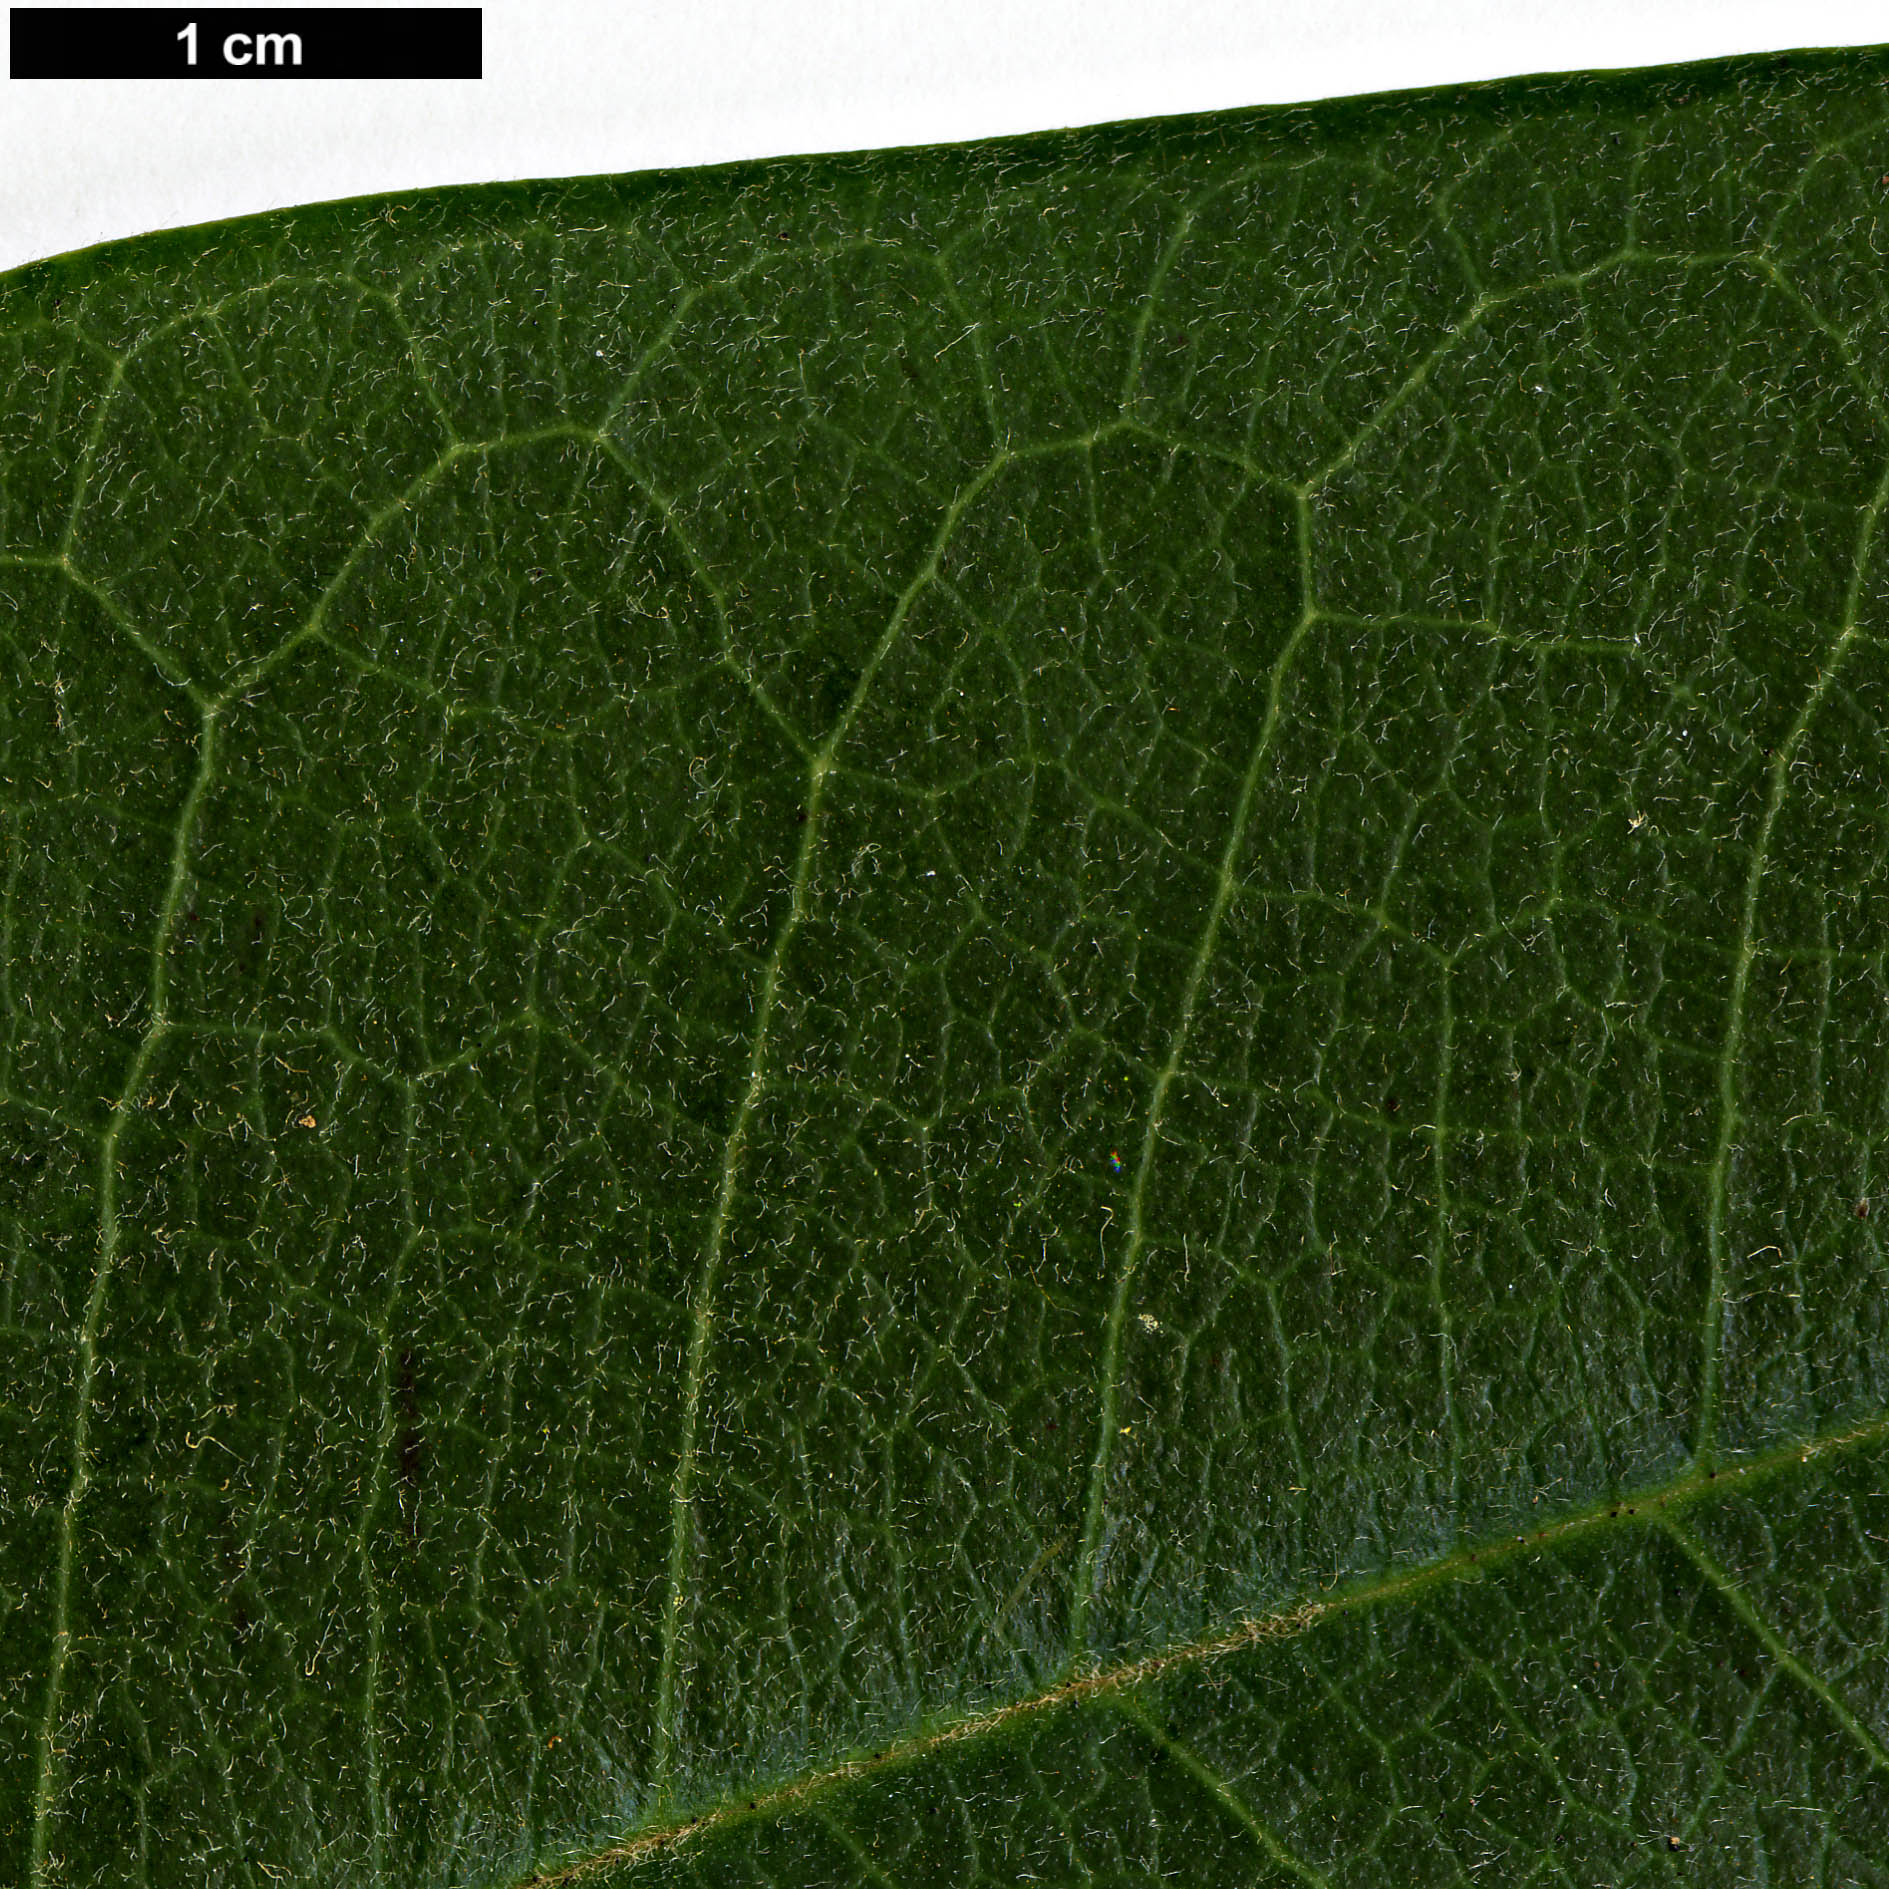 High resolution image: Family: Magnoliaceae - Genus: Magnolia - Taxon: calcicola